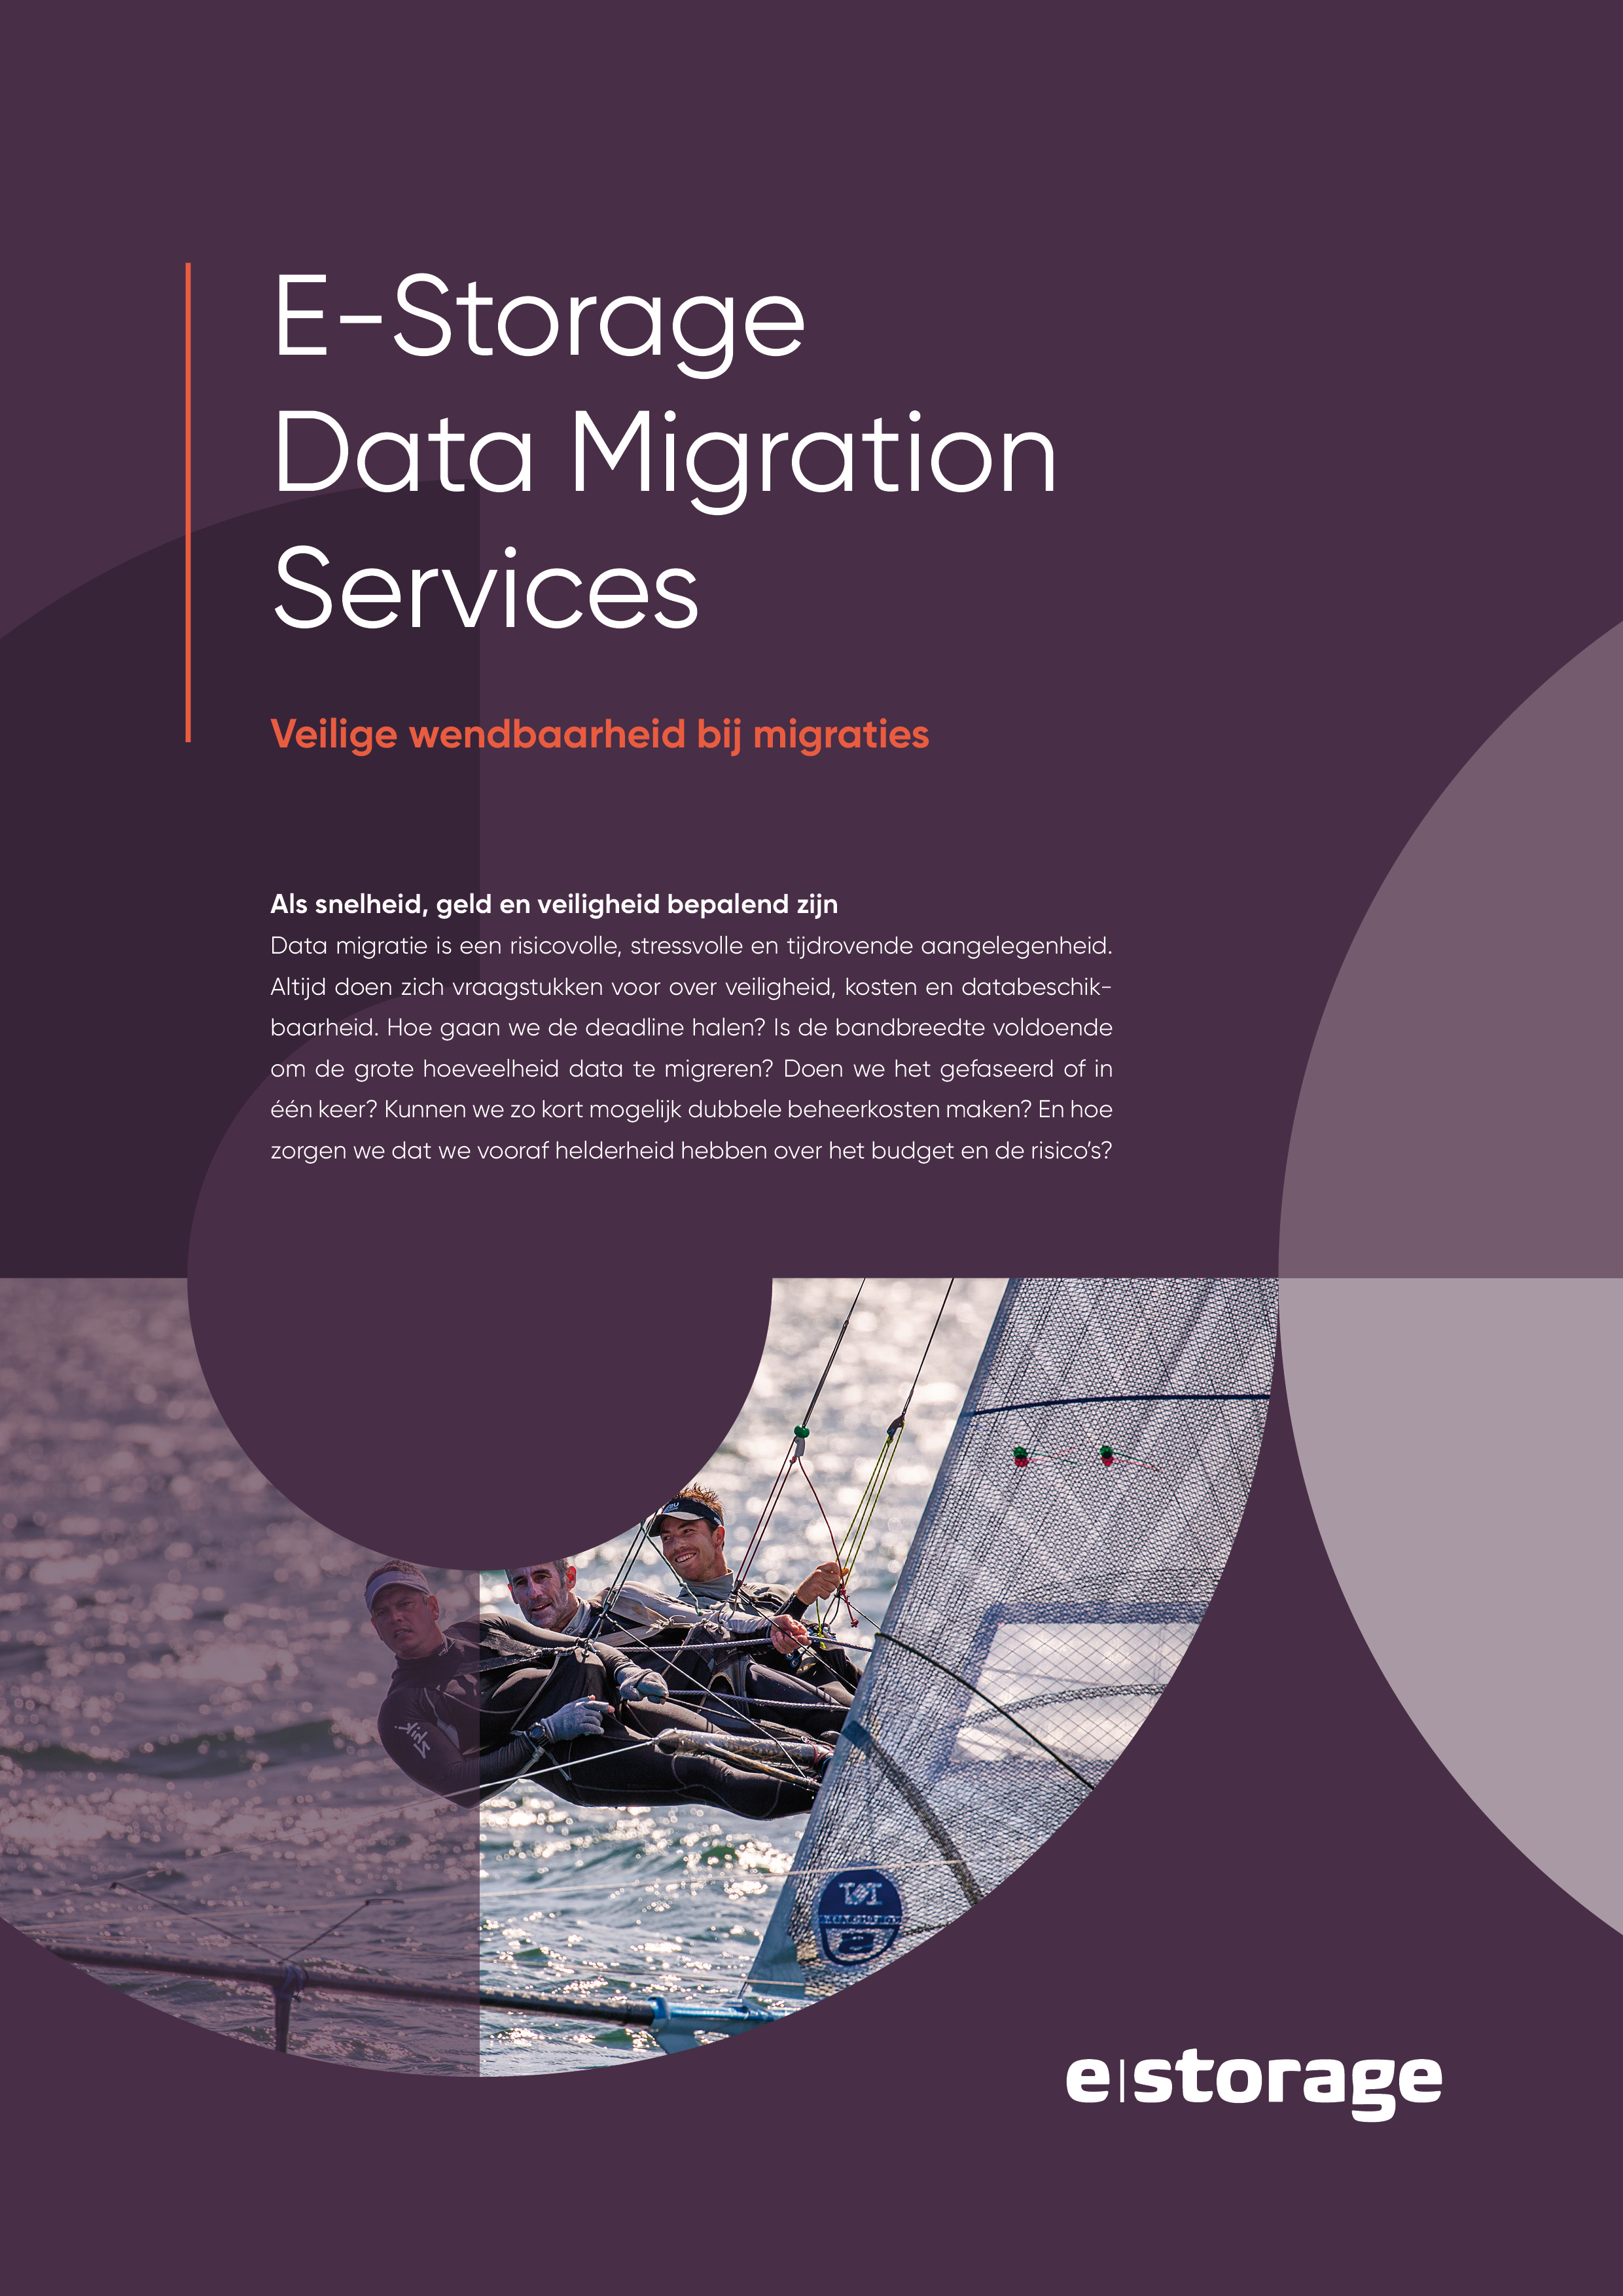 Storage datamigrationservices dienst